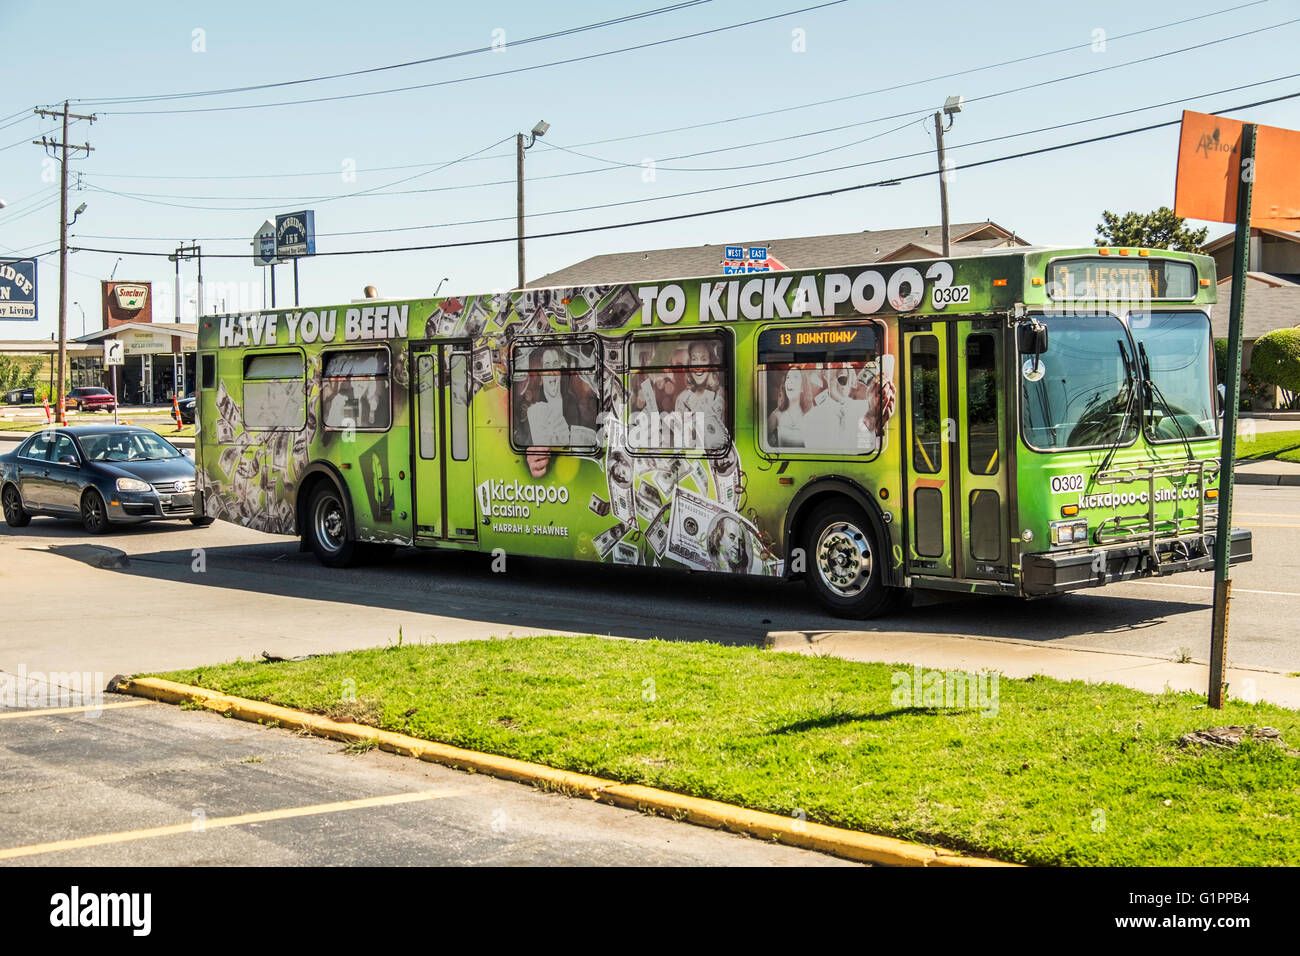 Ein Oklahoma City öffentliche Verkehrsmittel Bus auf einer Straße. Werbung Kickapoo Casino. Oklahoma, USA. Stockfoto